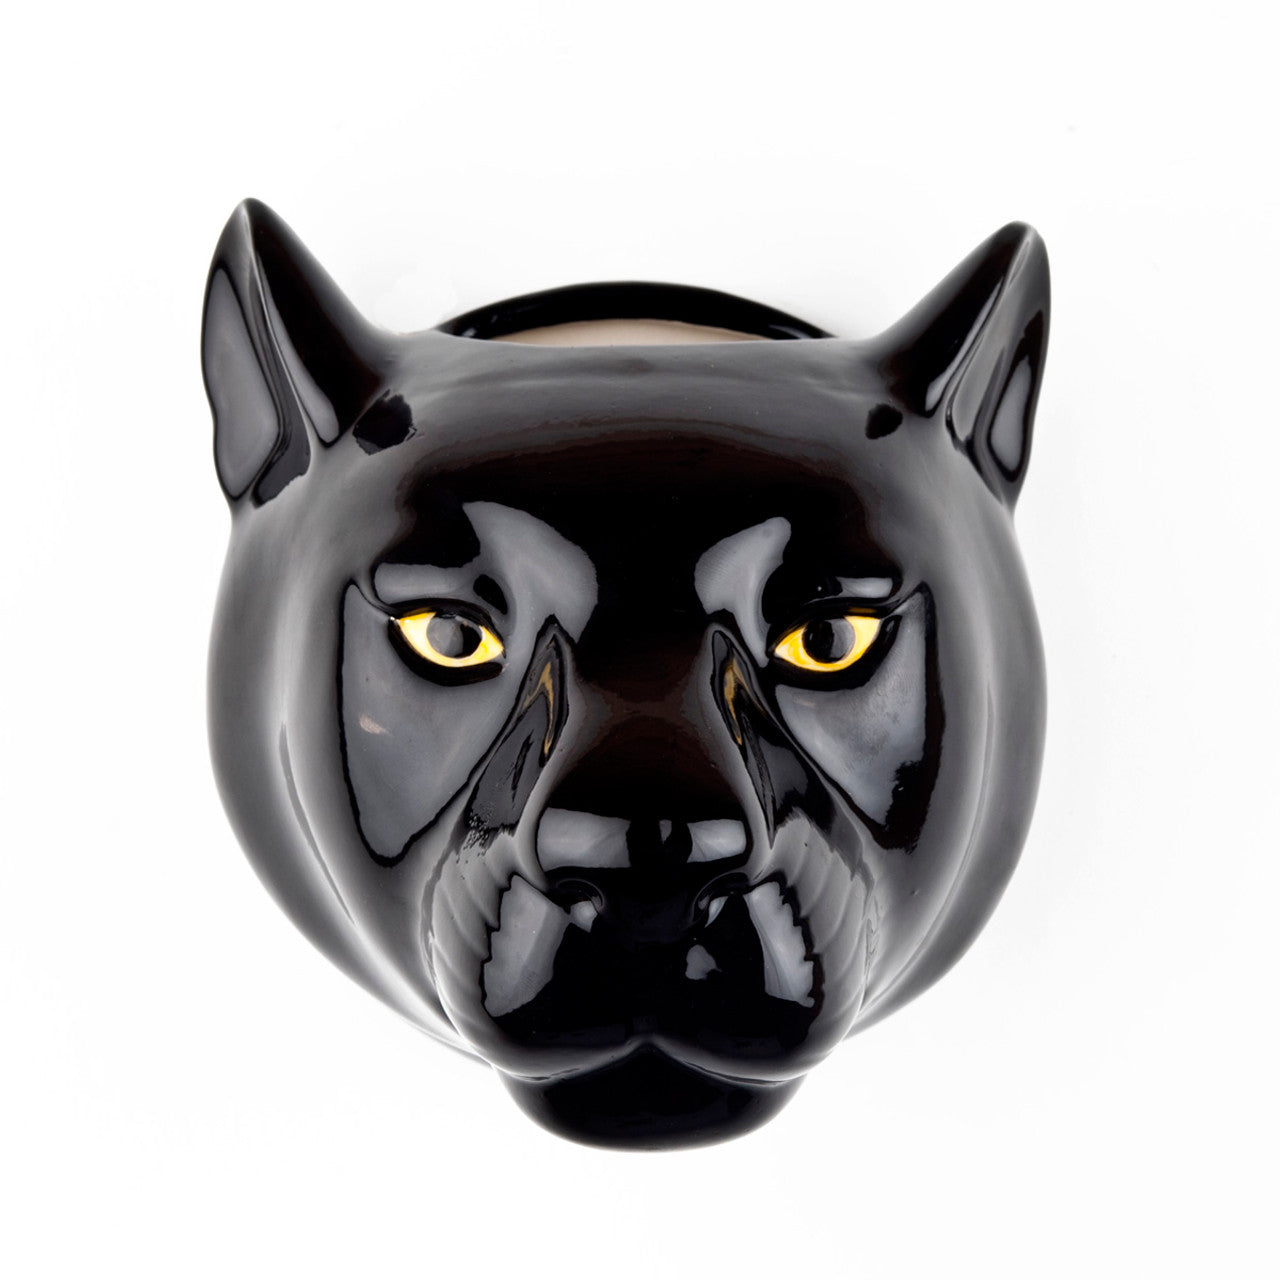 Black Panther Wall Vase - Large